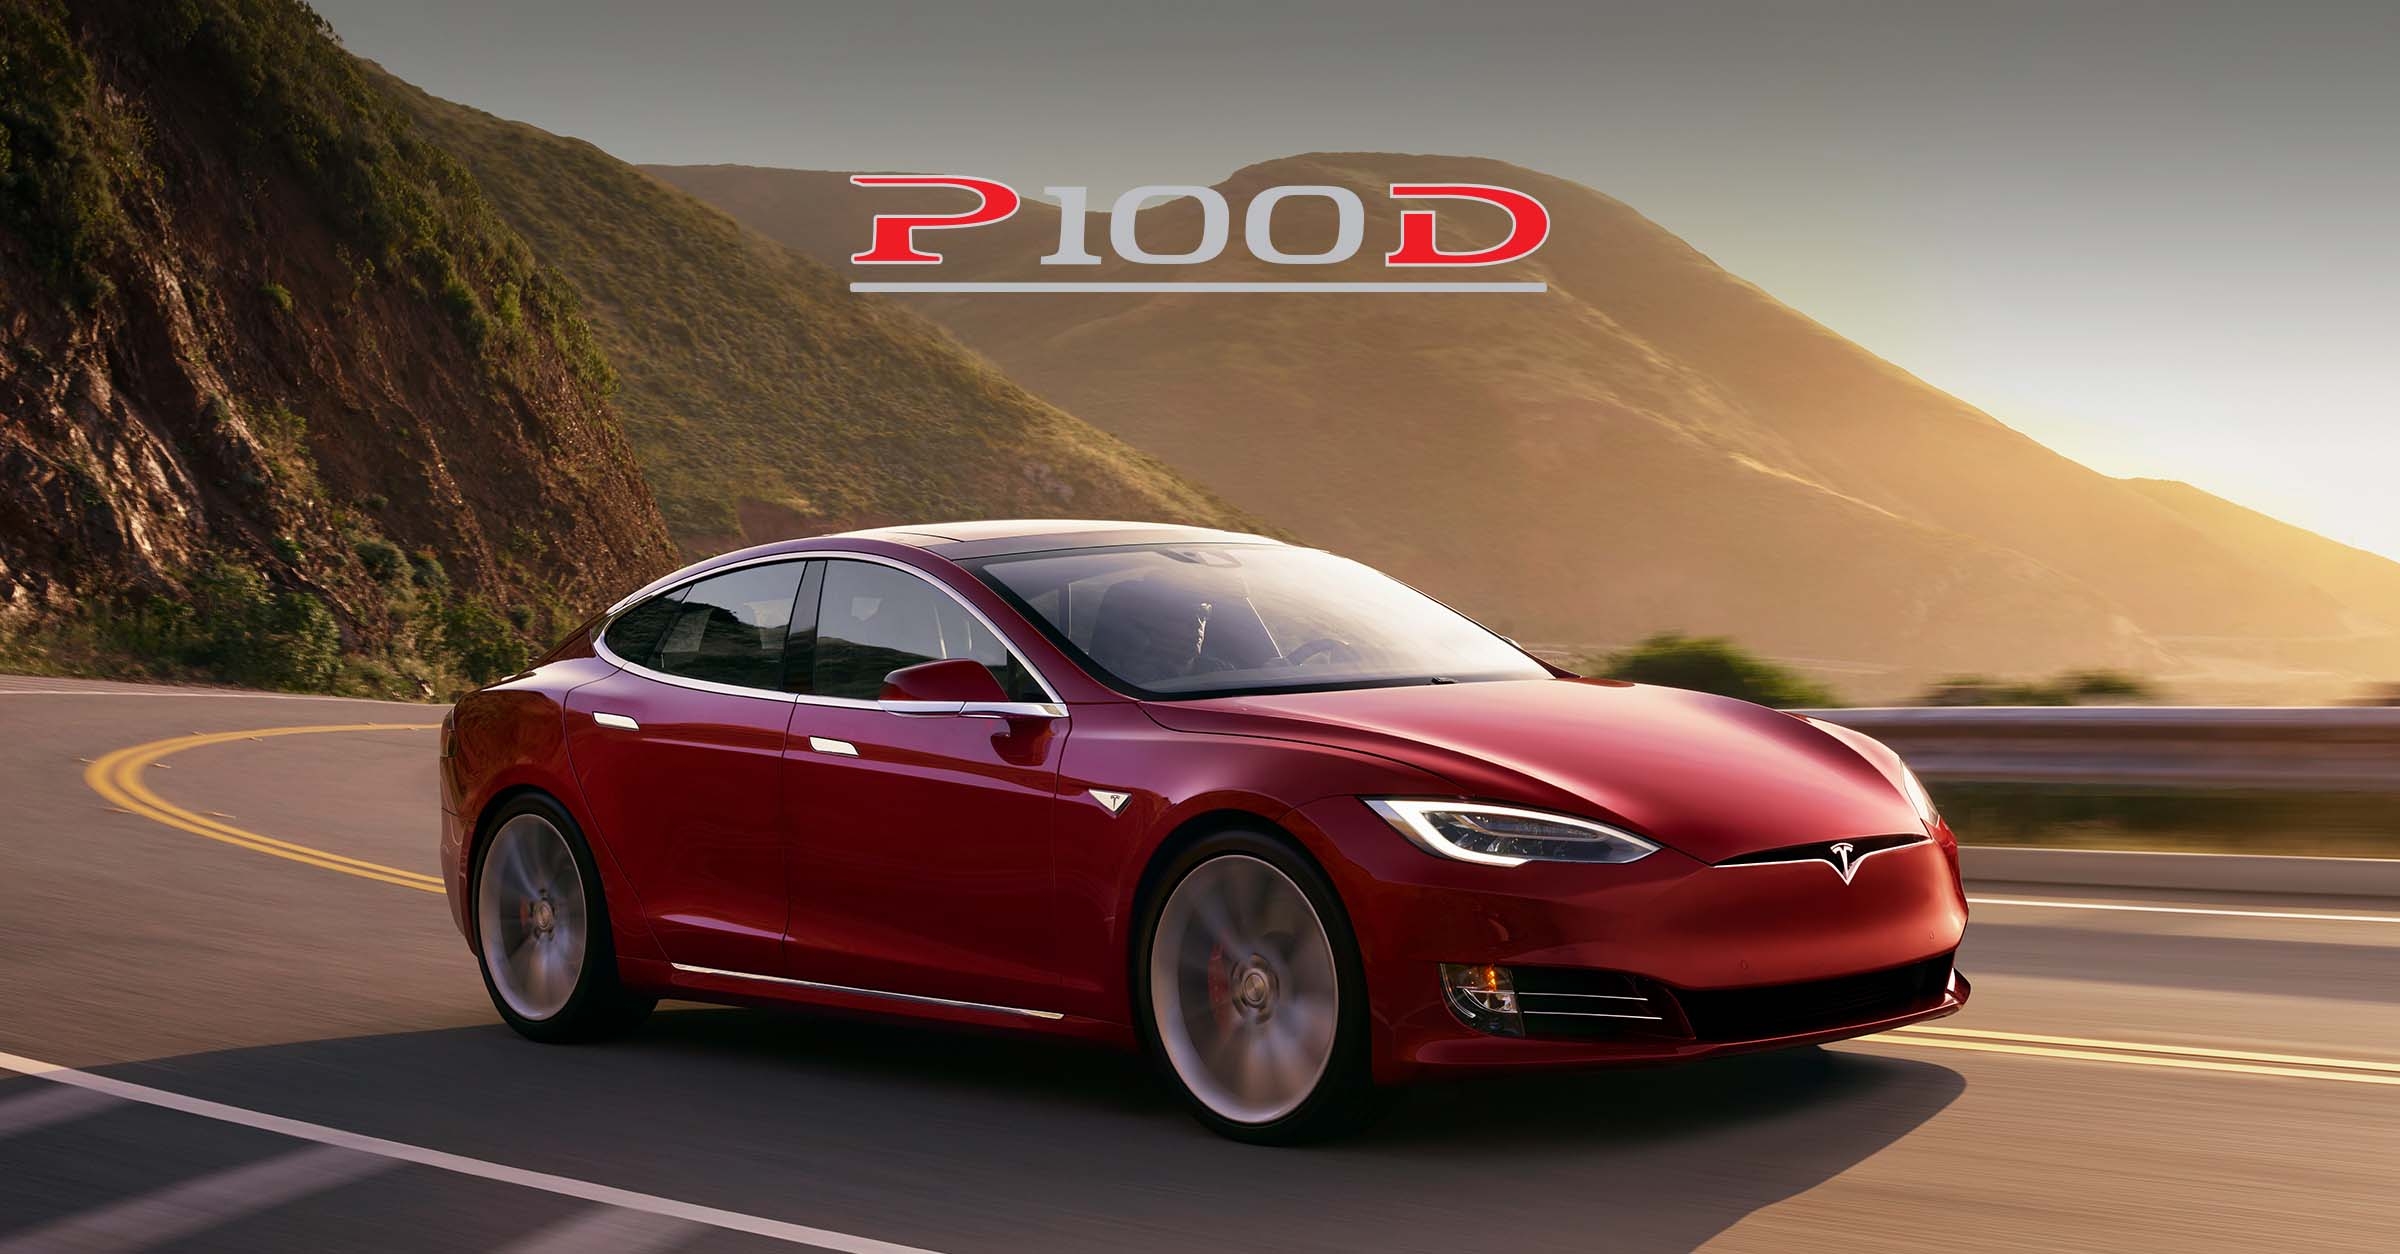 Vochtig Jonge dame vrijdag Tesla Model S P100D naar 613 km bereik | Ludicrous-upgrade |ZERauto.nl